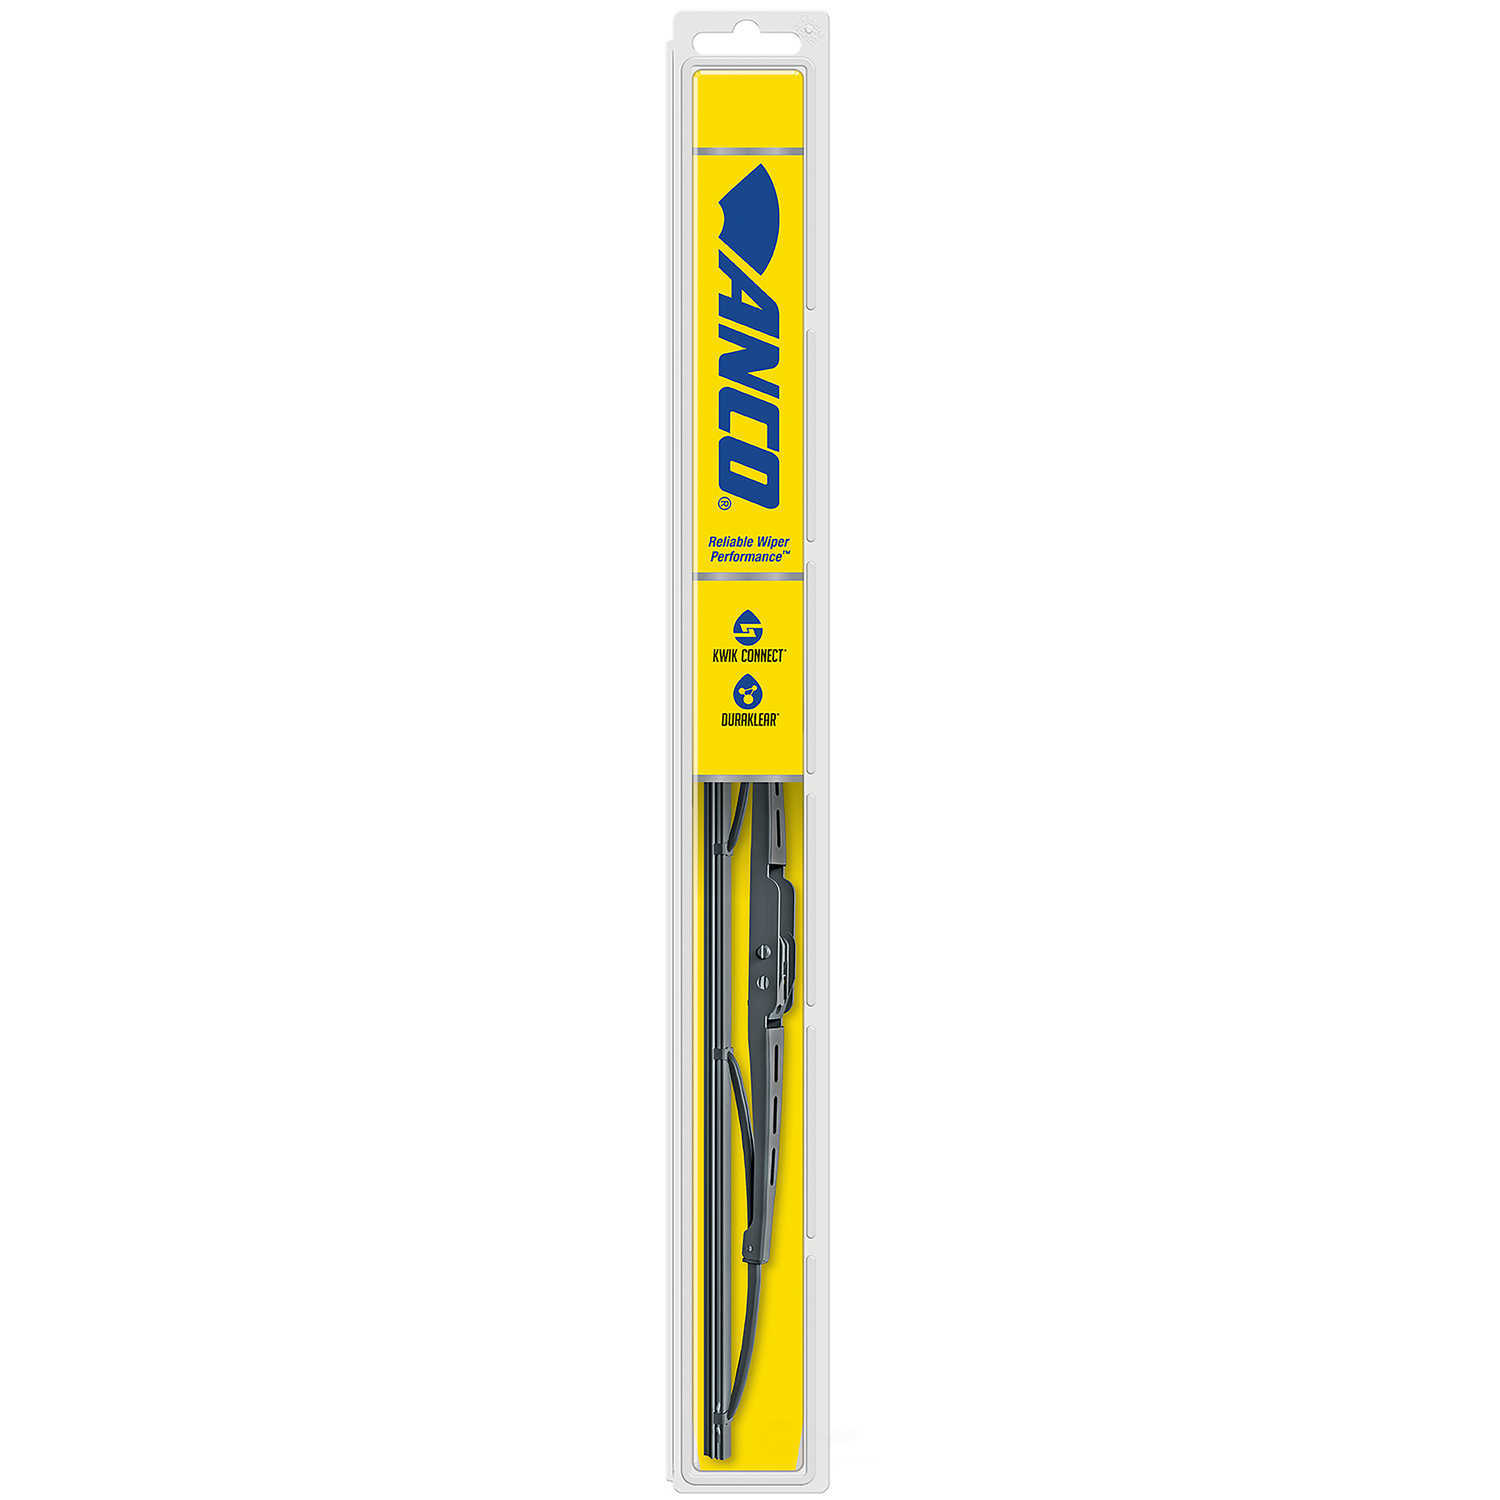 ANCO WIPER PRODUCTS - ANCO 31-Series Wiper Blade - ANC 31-21